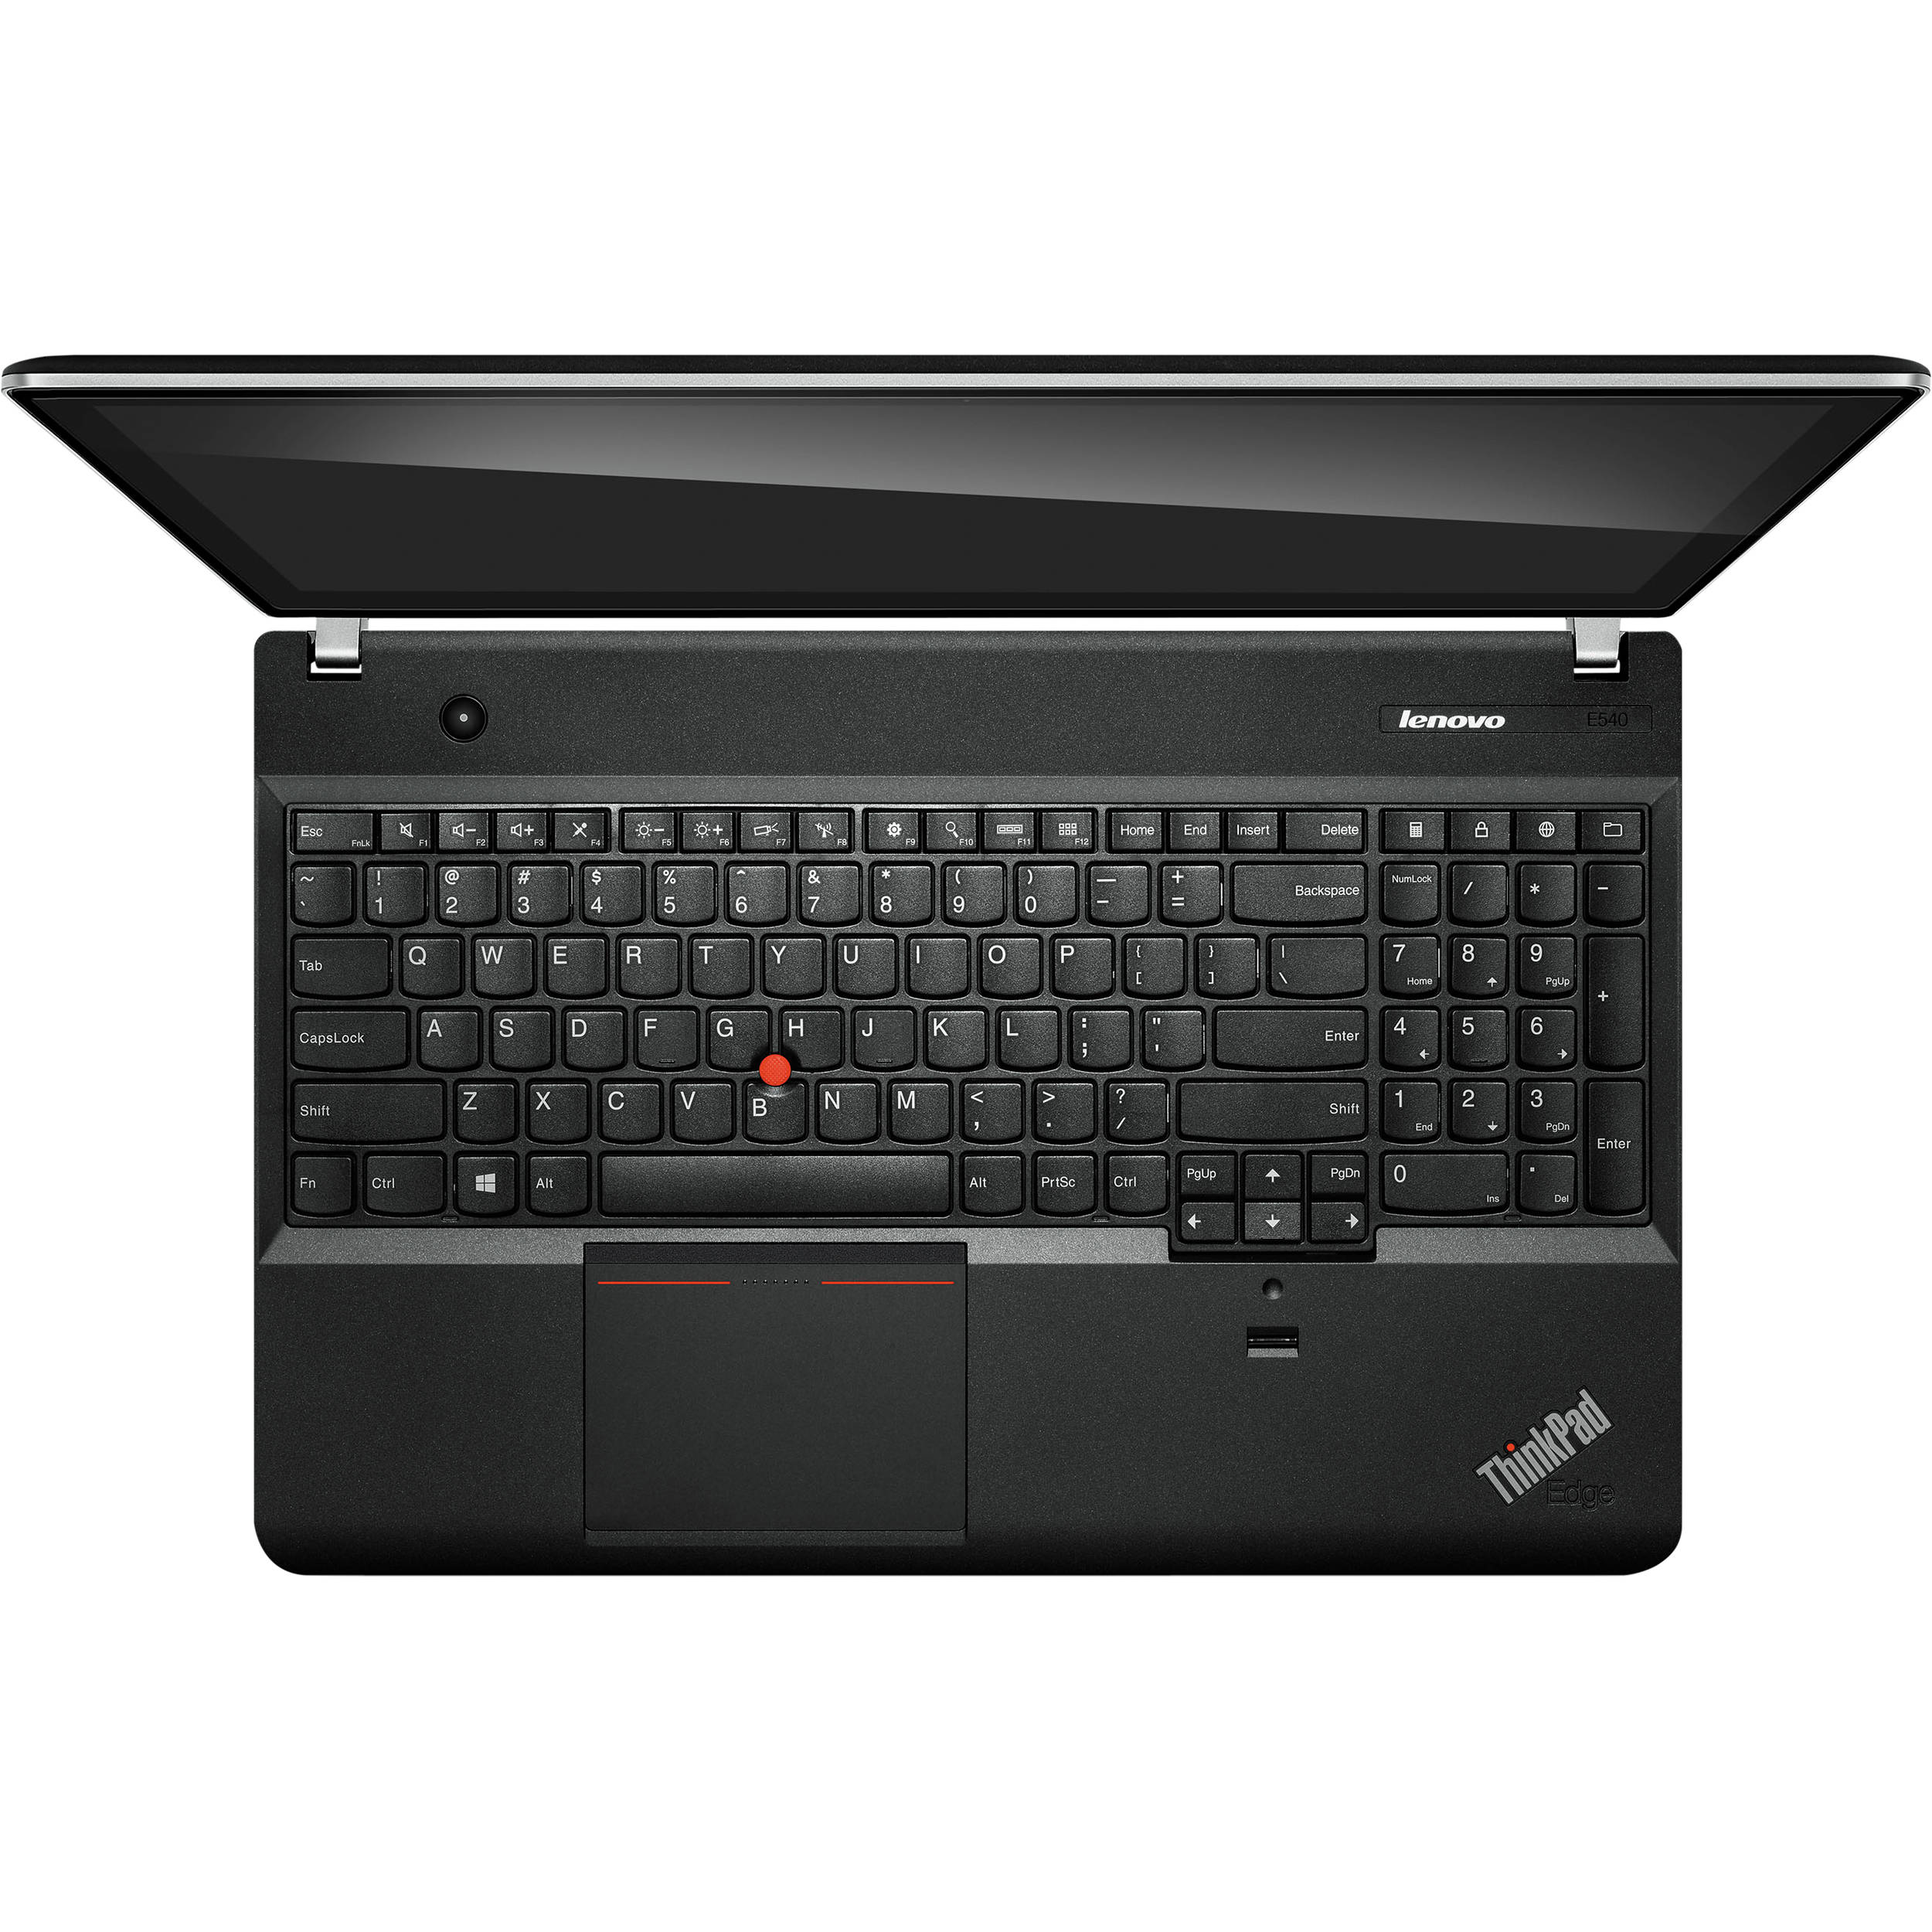 Lenovo Thinkpad E540 c6008sus 15 6 Laptop c6008sus